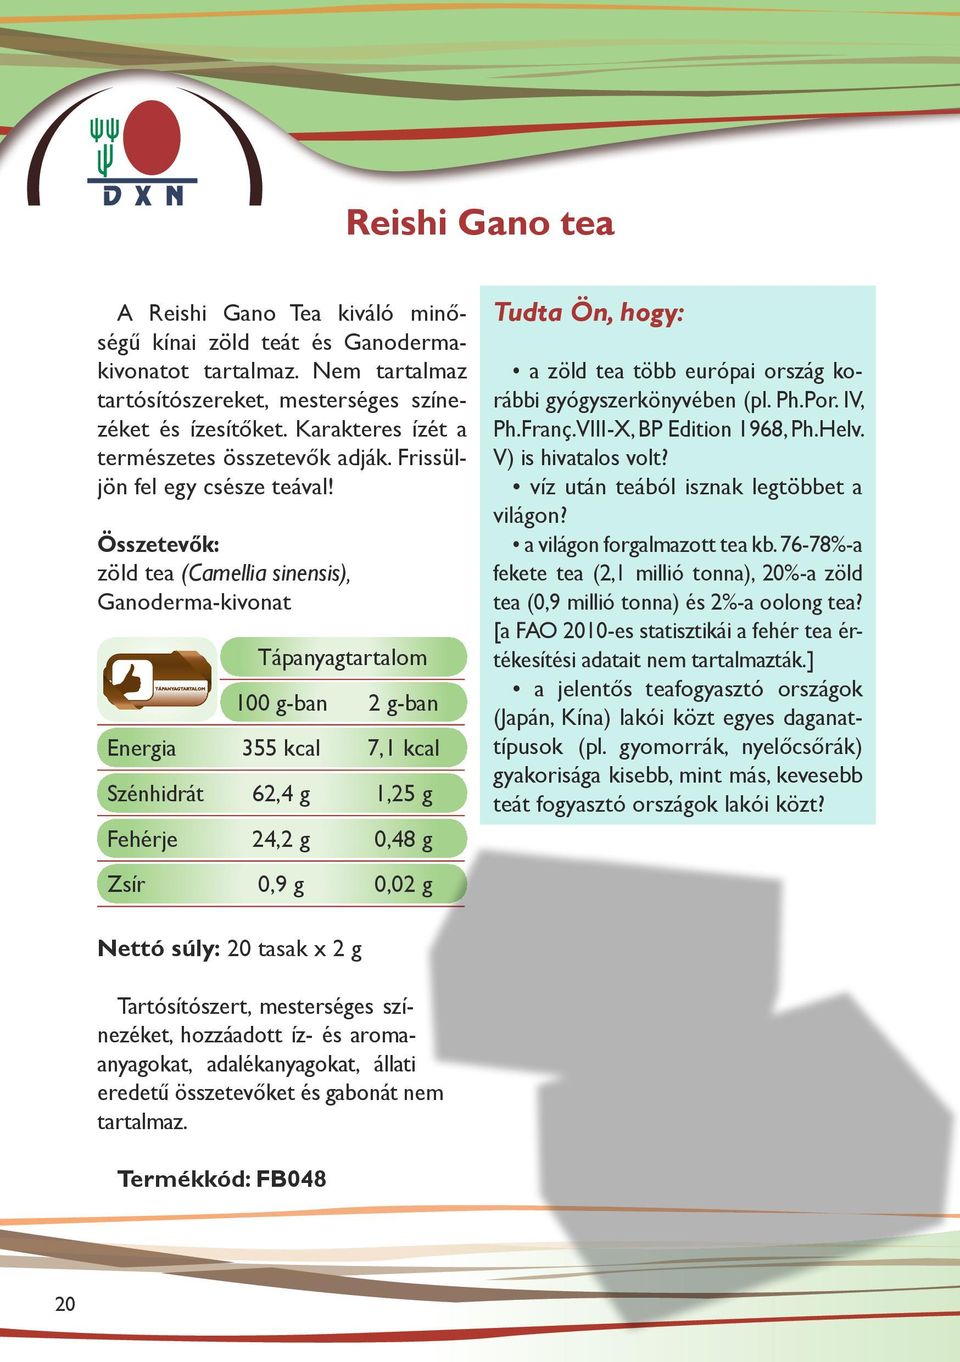 Összetevők: zöld tea (Camellia sinensis), Ganoderma-kivonat Tápanyagtartalom 100 g-ban 2 g-ban Energia 355 kcal 7,1 kcal Szénhidrát 62,4 g 1,25 g Fehérje 24,2 g 0,48 g Zsír 0,9 g 0,02 g a zöld tea